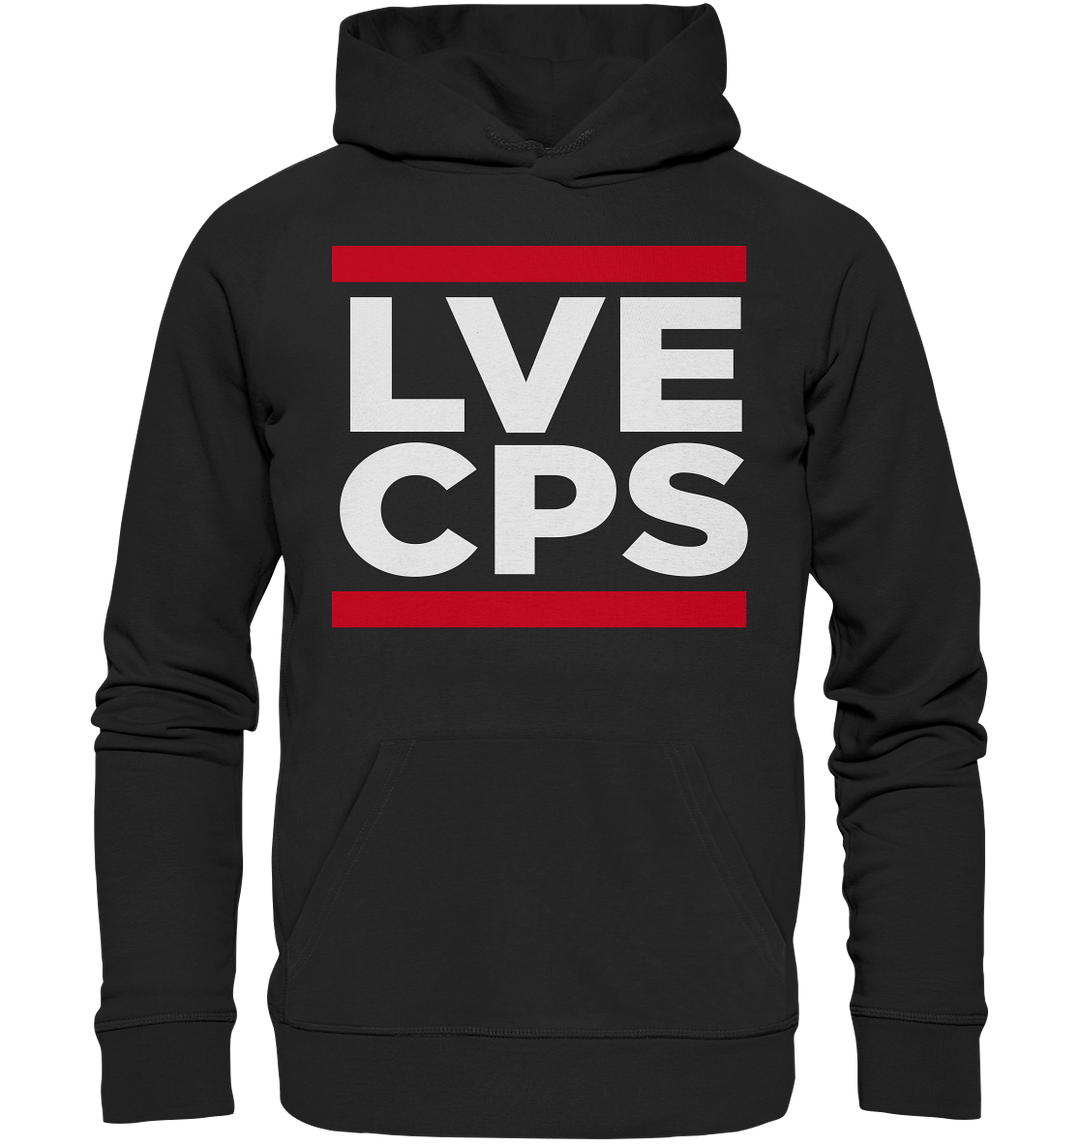 "LVE CPS" - Premium Unisex Hoodie